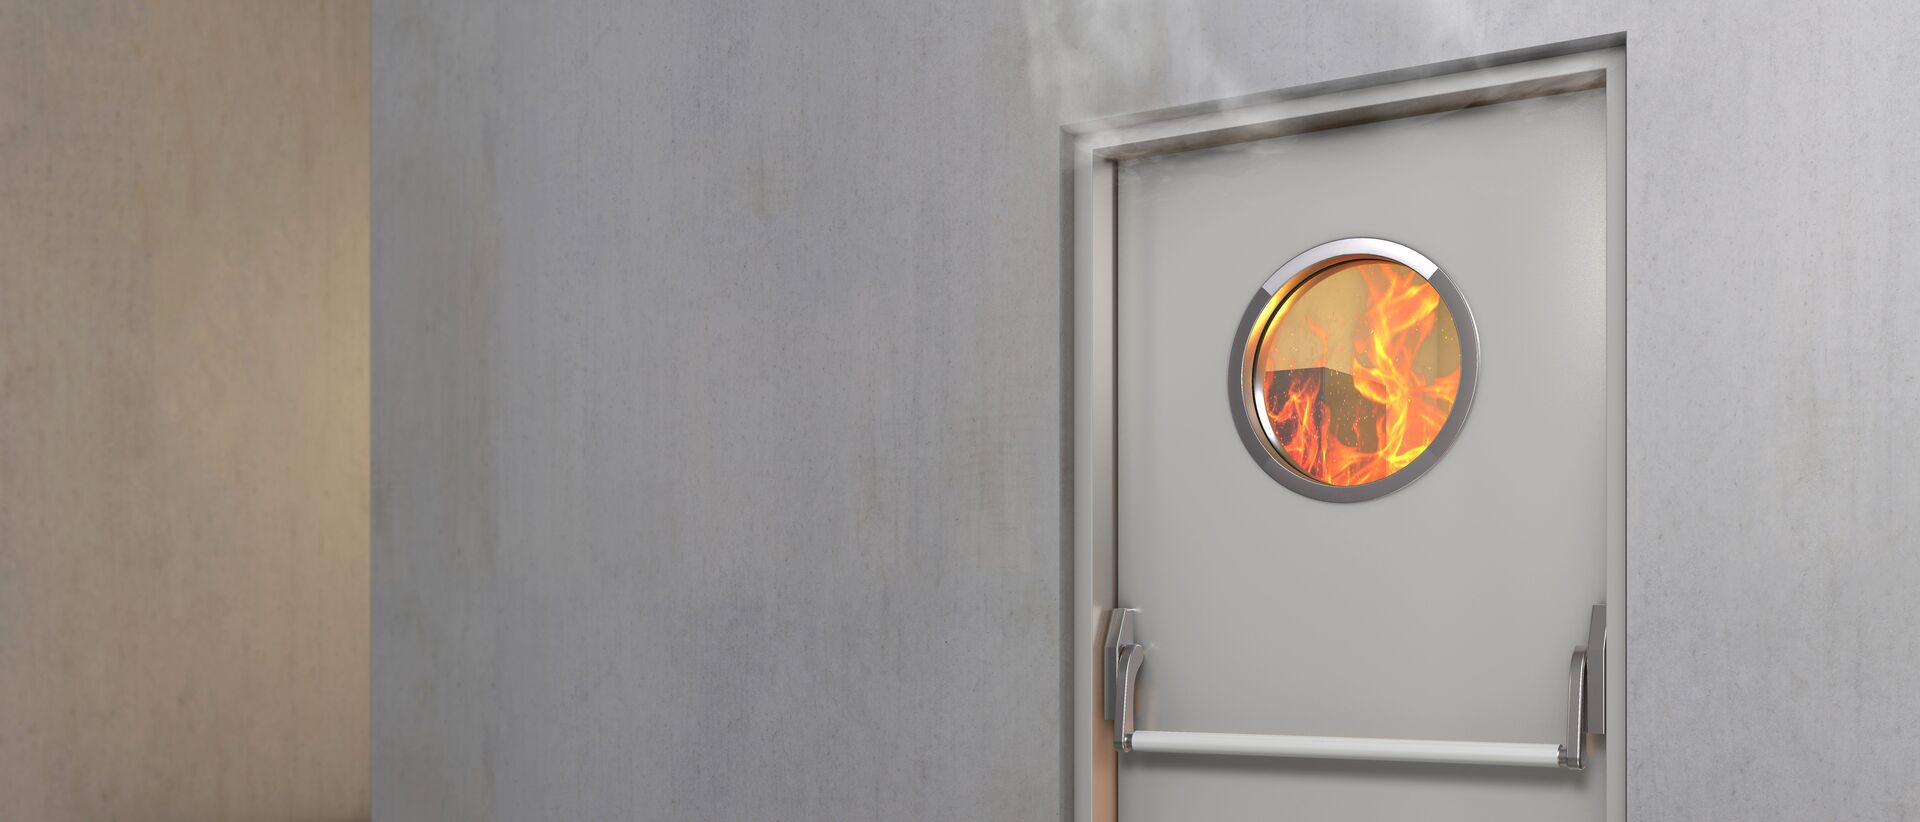 Rauchschutztür & Brandschutztür - Feuerschutztüren für Gewerbeobjekte